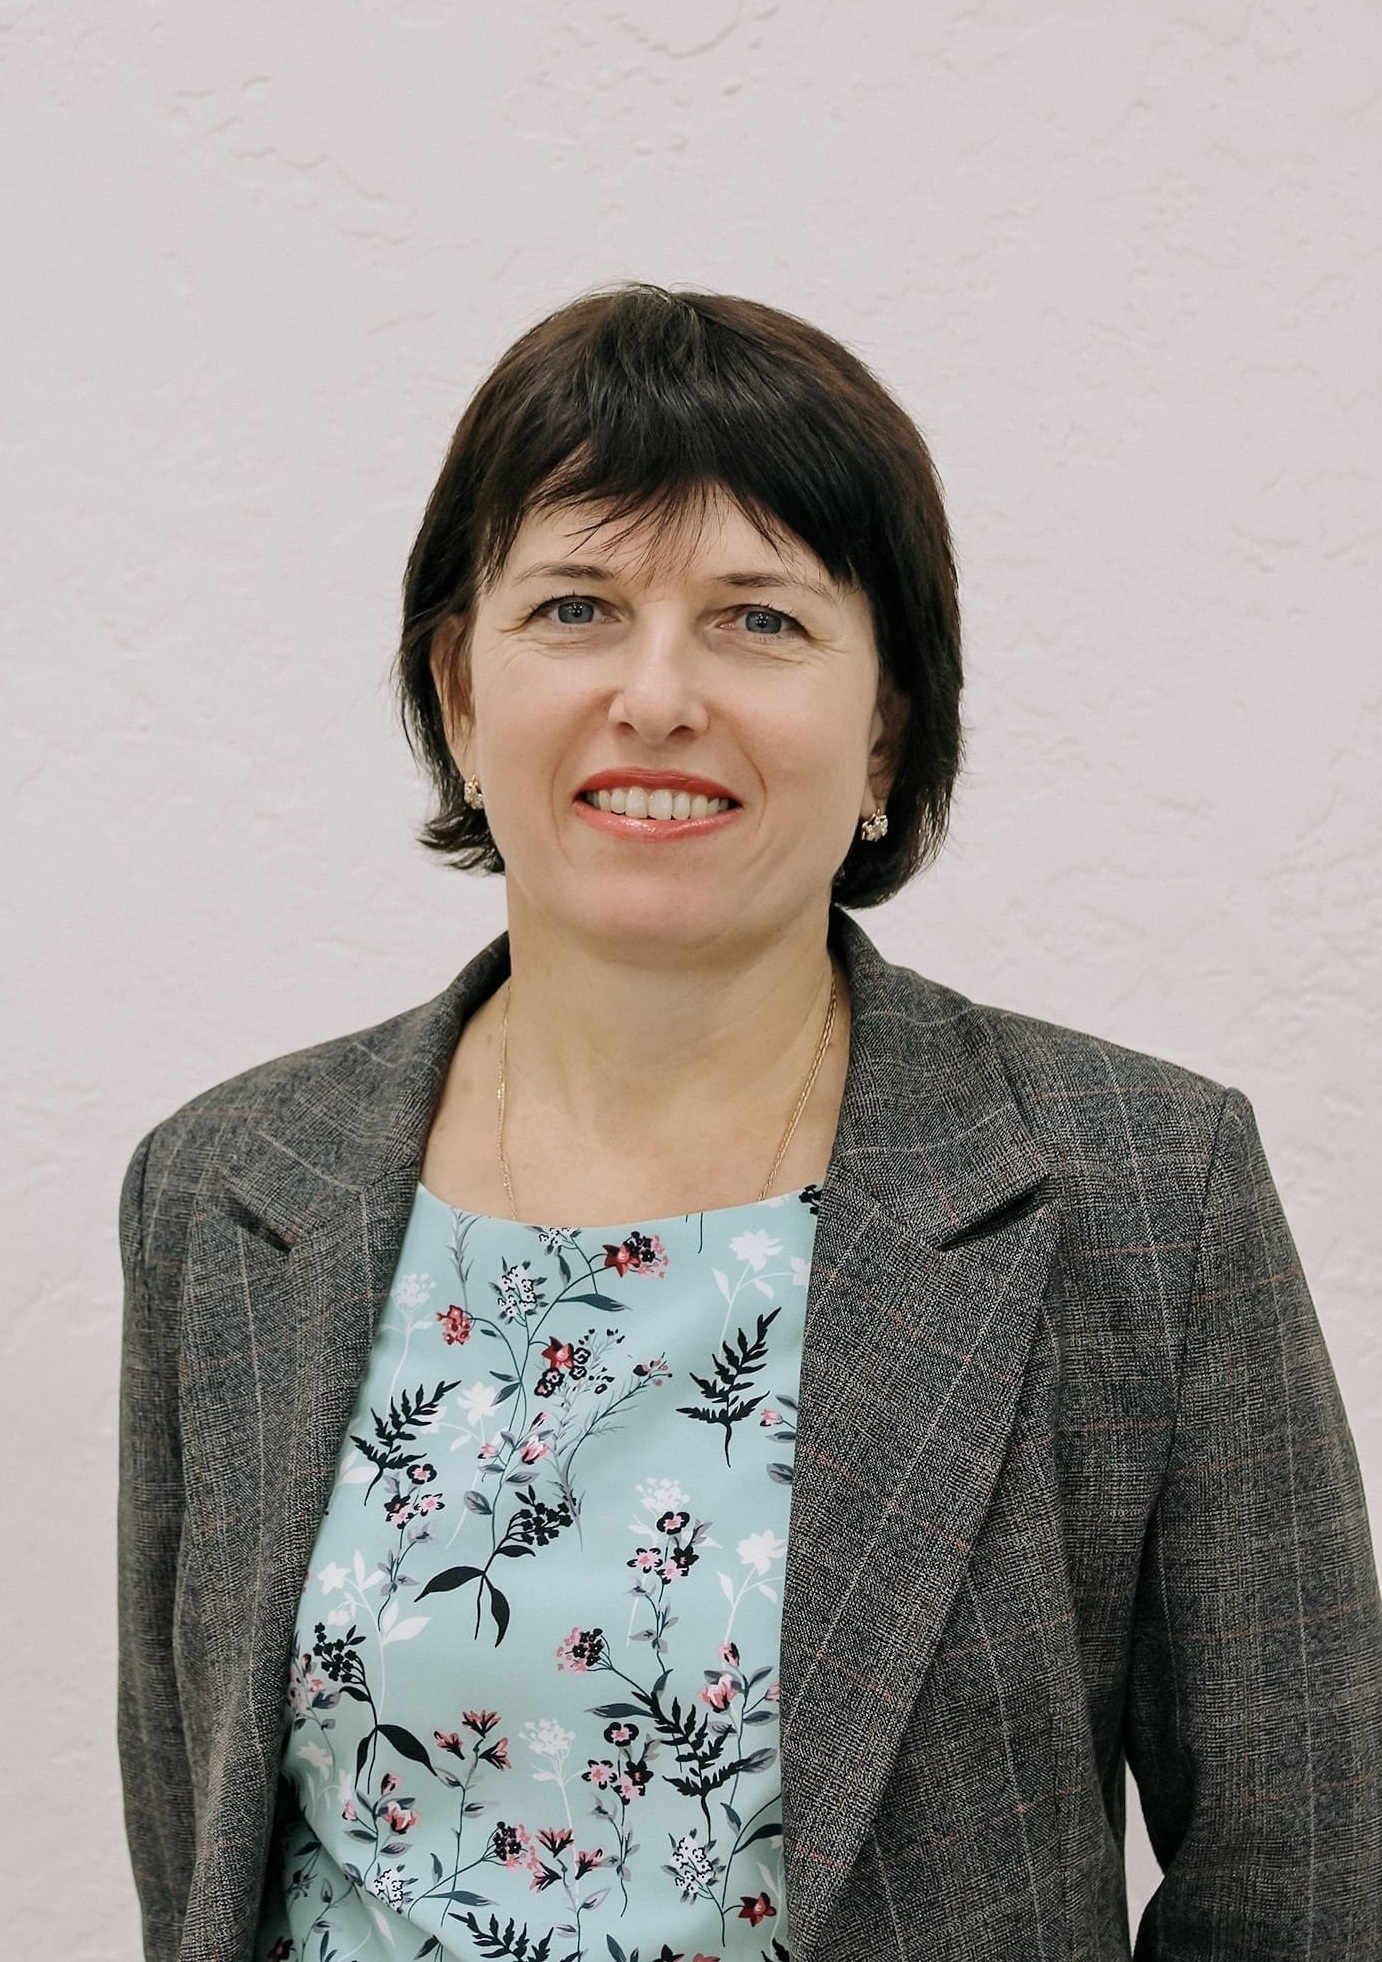 Изюмцева Ольга Ивановна, учитель.